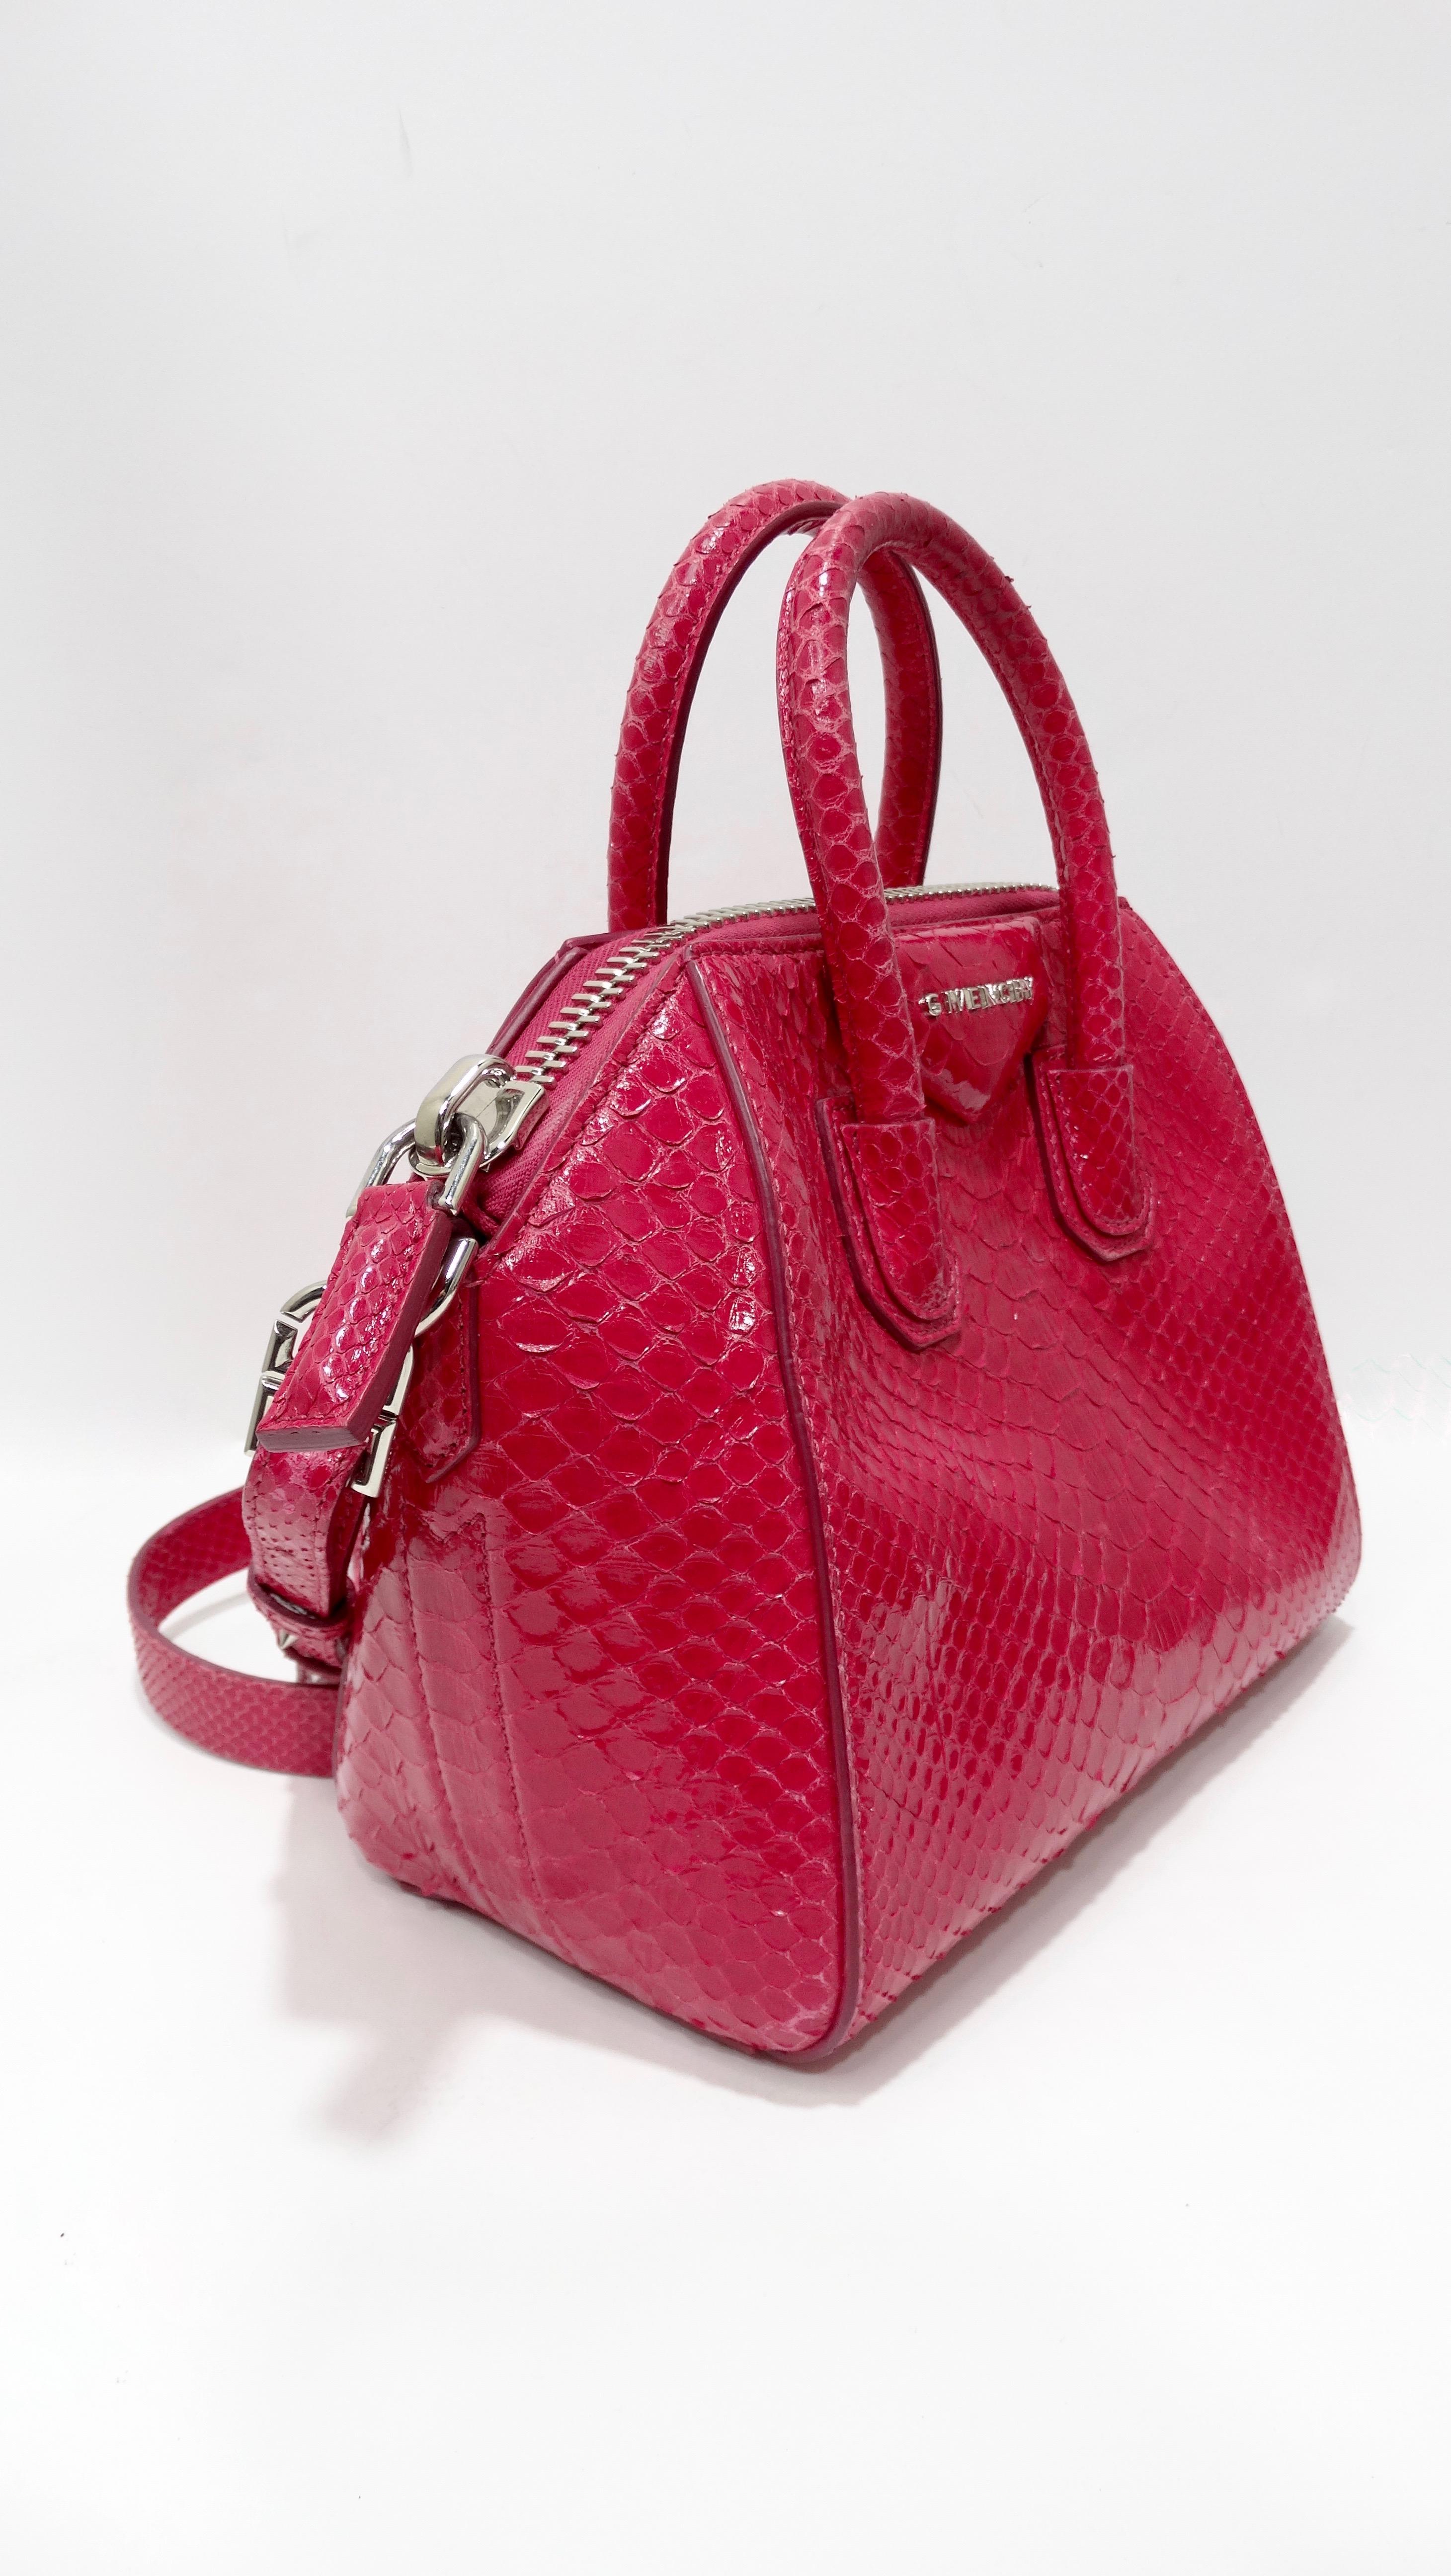 Bringen Sie Farbe in Ihre Looks mit dieser tollen Givenchy Antigona Tasche! CIRCA 2011, diese seltene Tasche ist wunderschön aus laminiertem Python gefertigt und in leuchtendem Pink gehalten. Strukturierte Seiten, zwei gerollte Griffe oben,